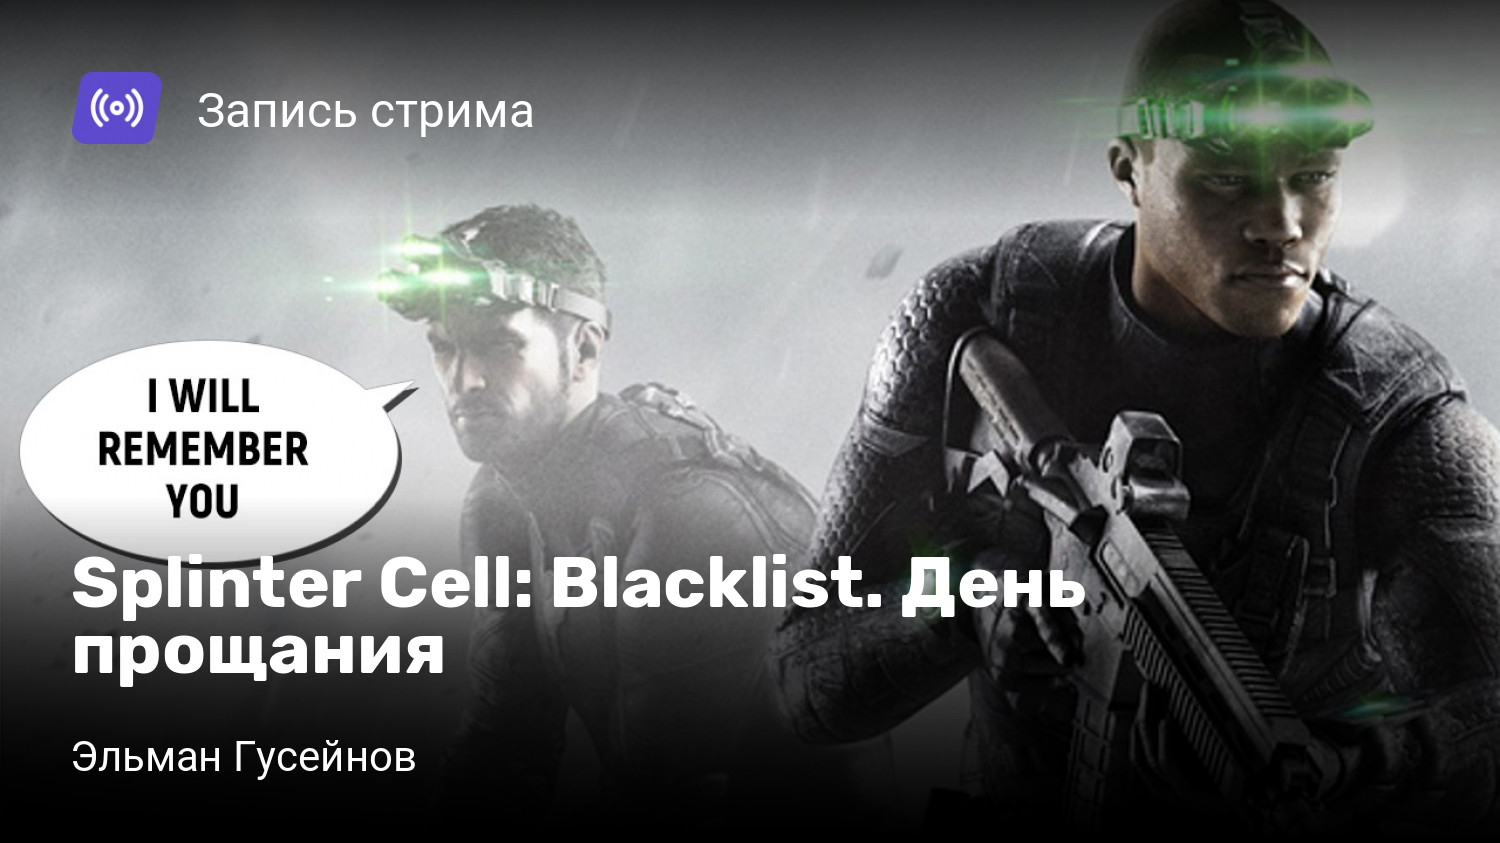 Steam blacklist splinter cell blacklist фото 95